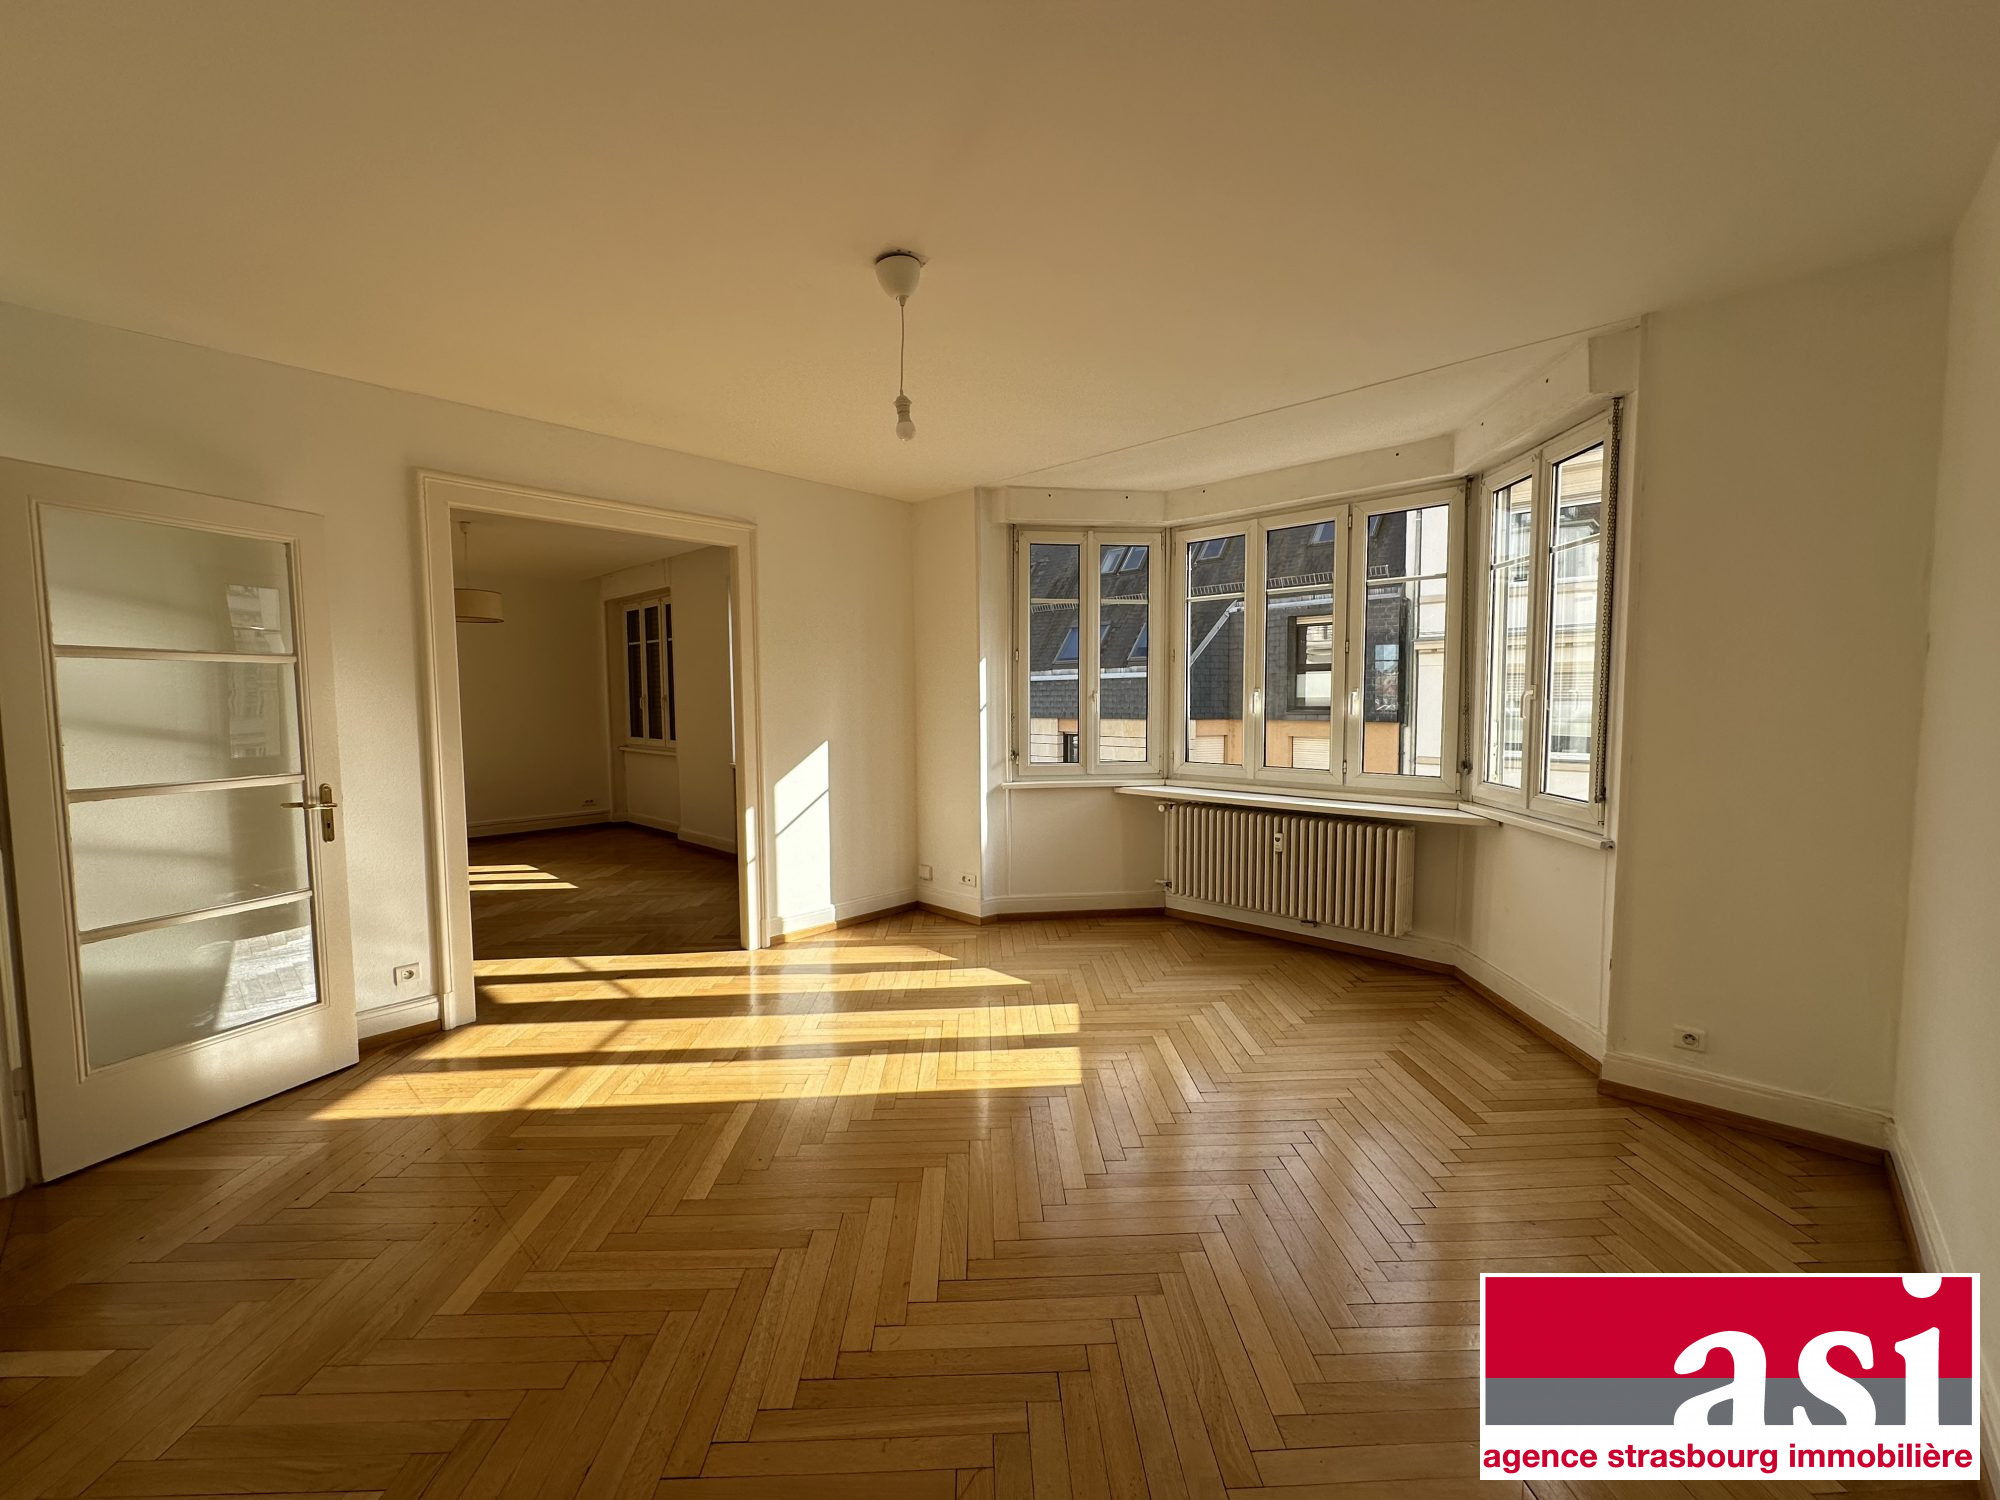 Vente Appartement 88m² 3 Pièces à Strasbourg (67000) - Agence Strasbourg Immobilière